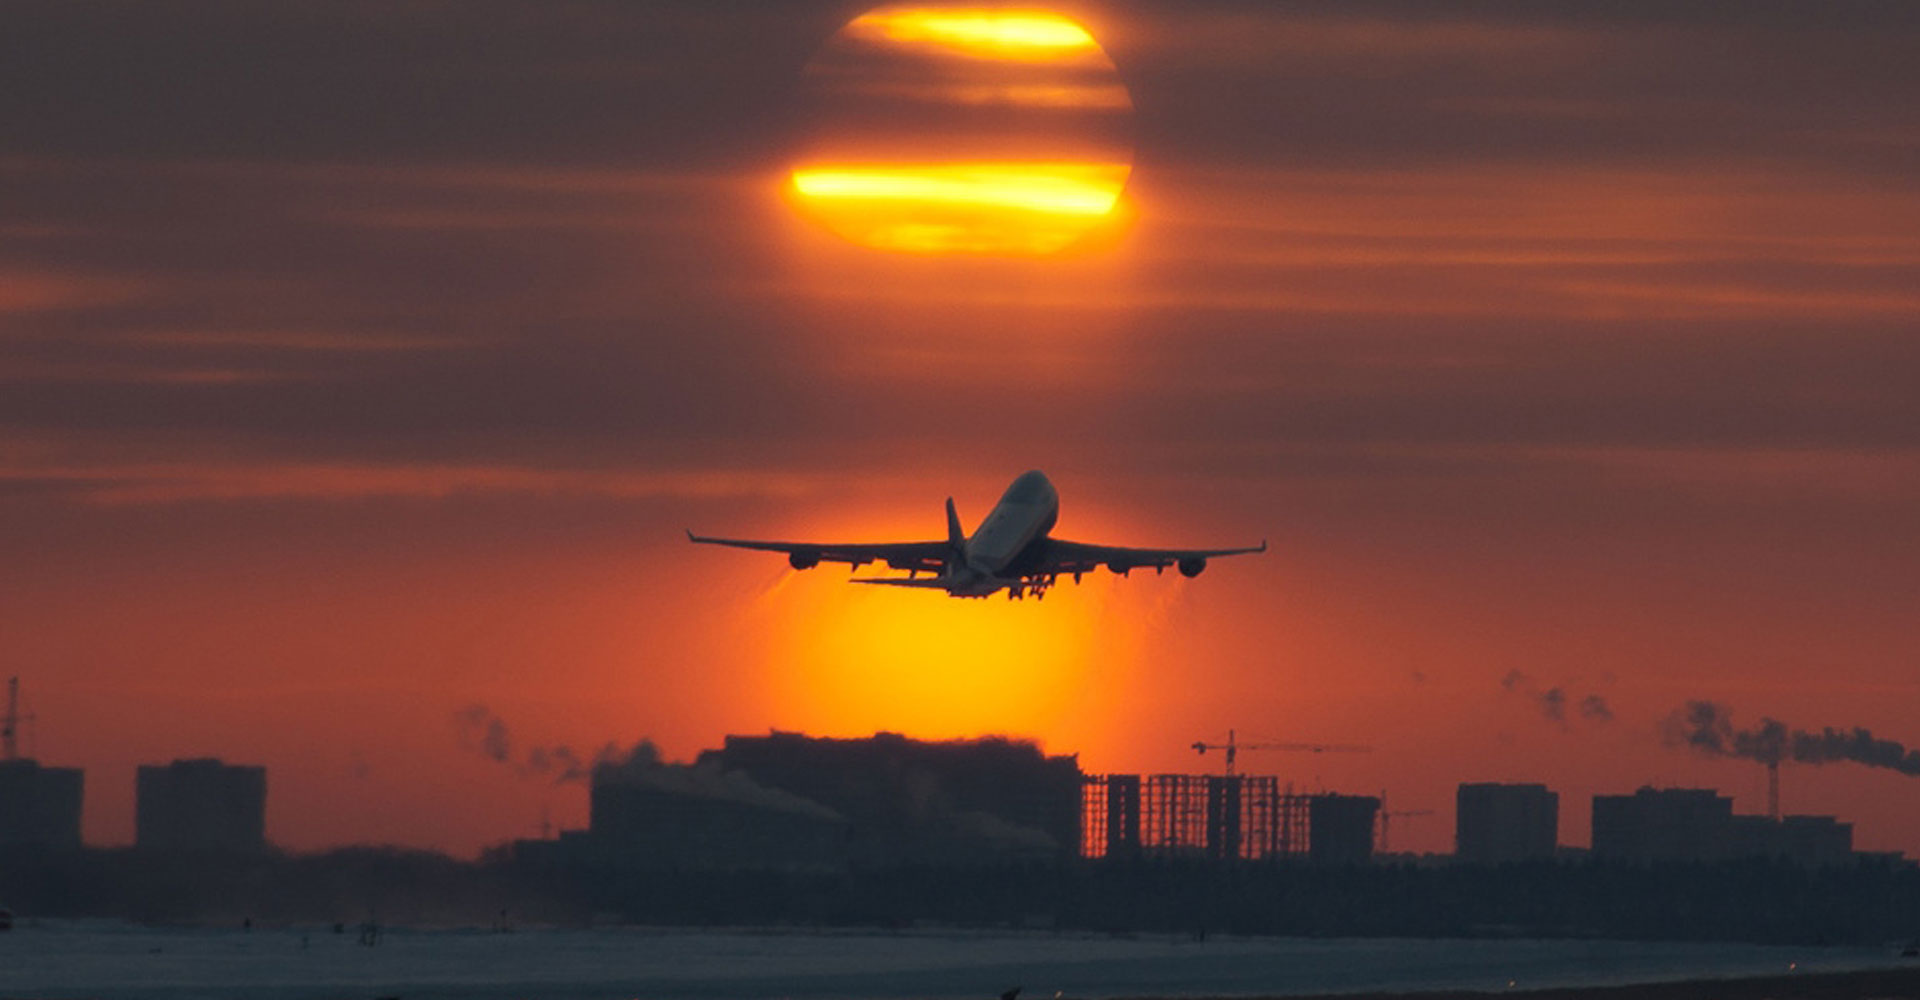 Ո՞ր ավիաընկերություններն են ժամանակավորապես չեղարկել չվերթները ՀՀ և ՀՀ-ից դուրս